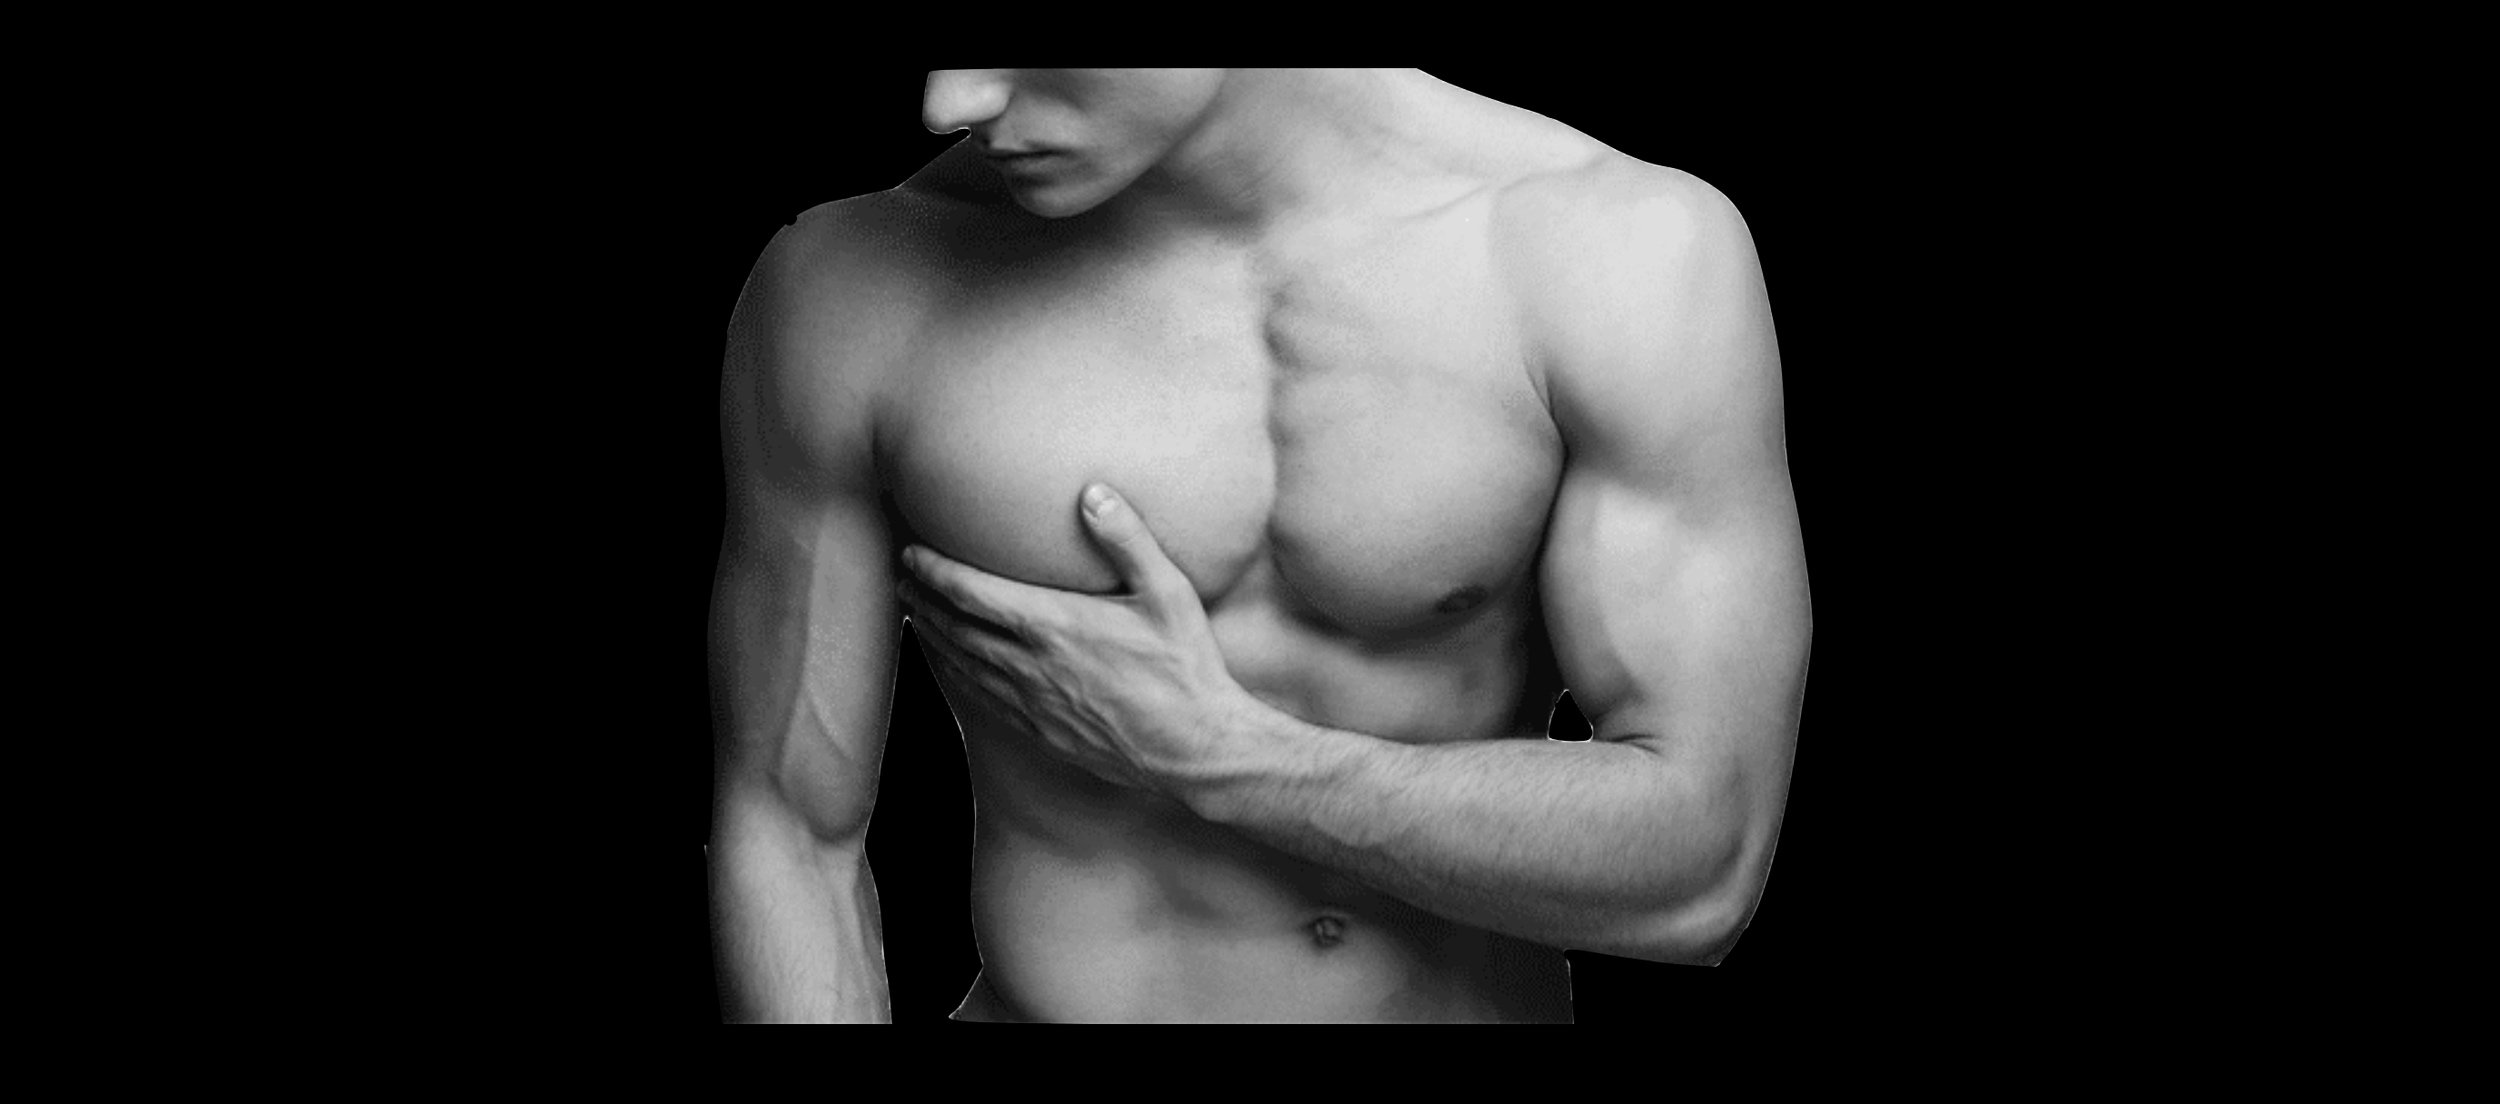 Gynaecomastie bij mannen door dr. Karl Waked voor een betere esthetiek van de mannelijke borstkas en meer definitie